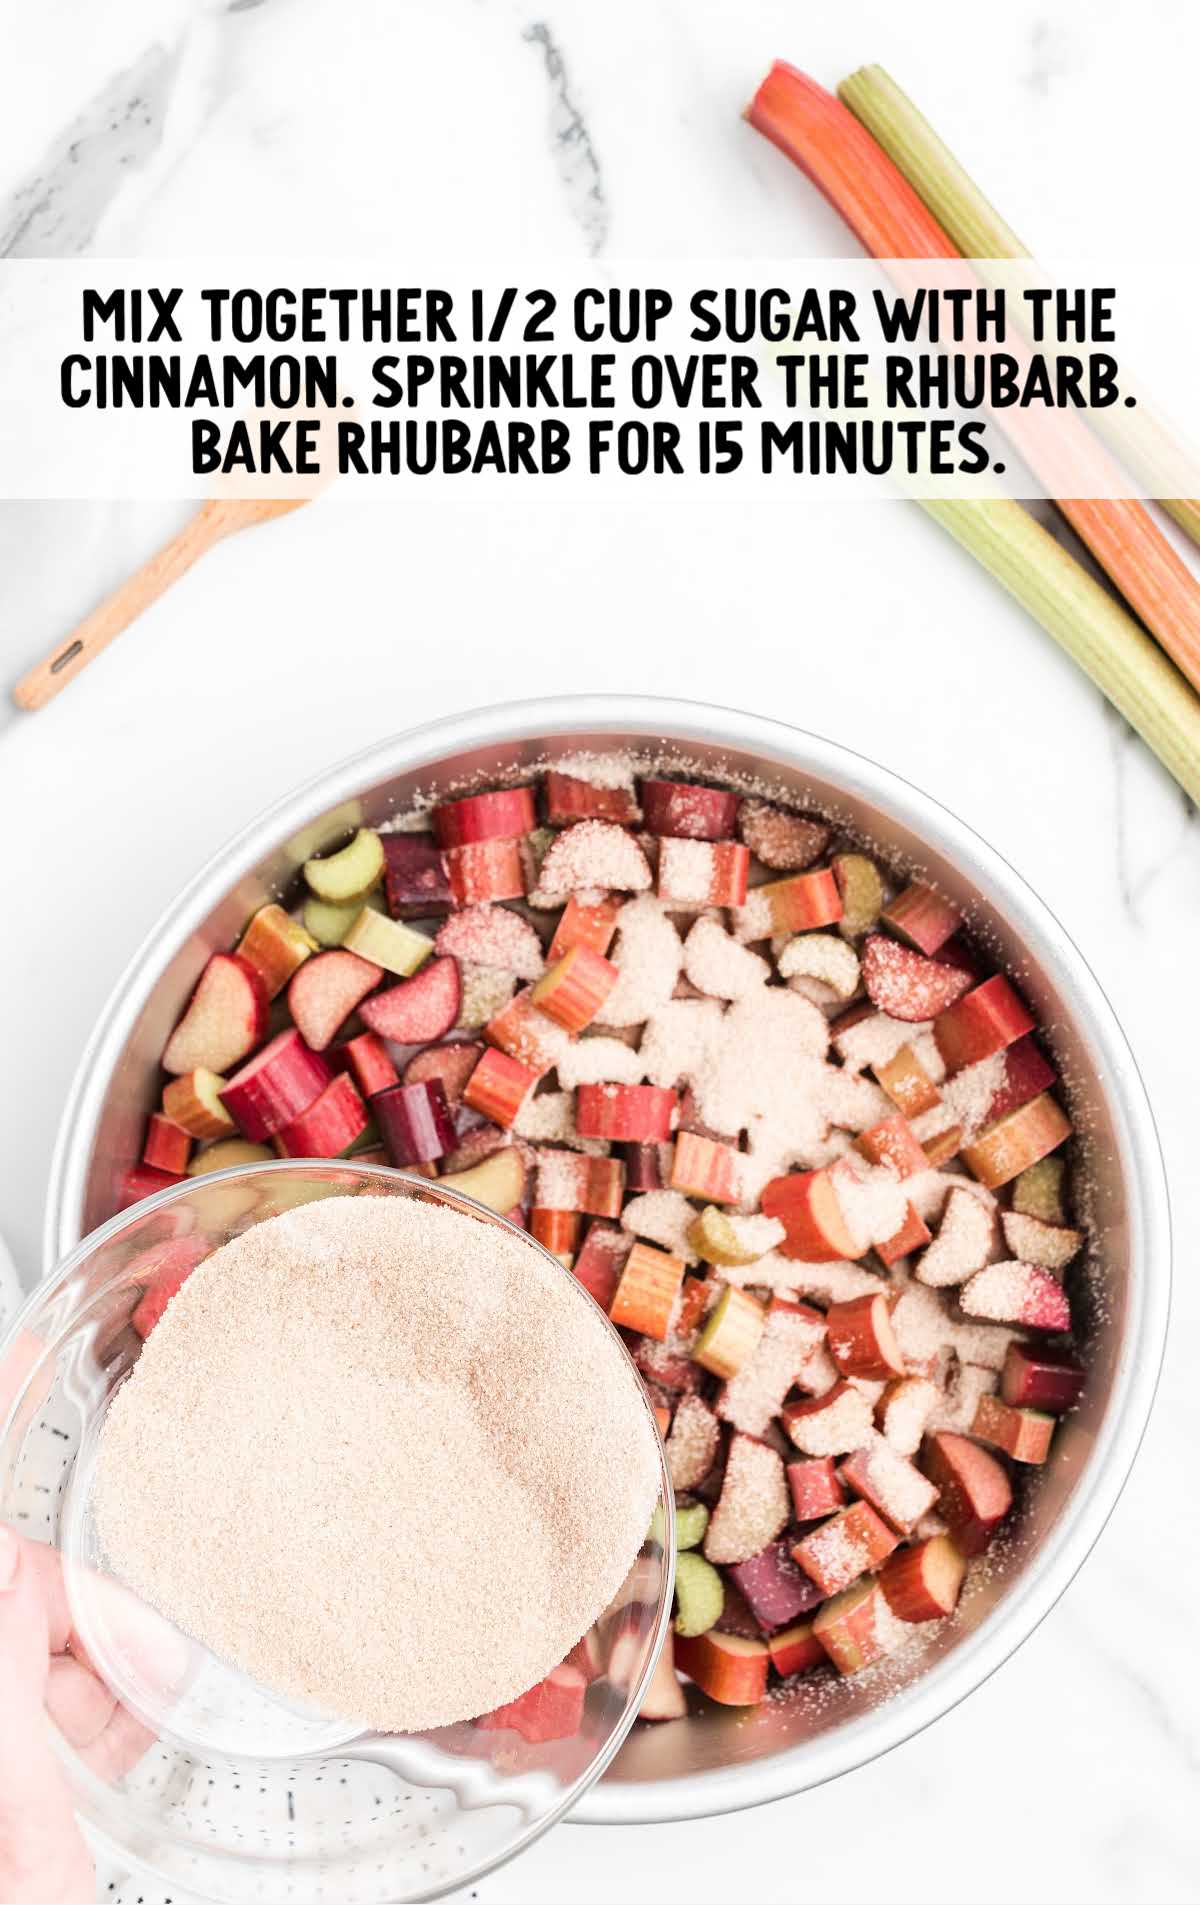 sugar and cinnamon being sprinkled over rhubarb